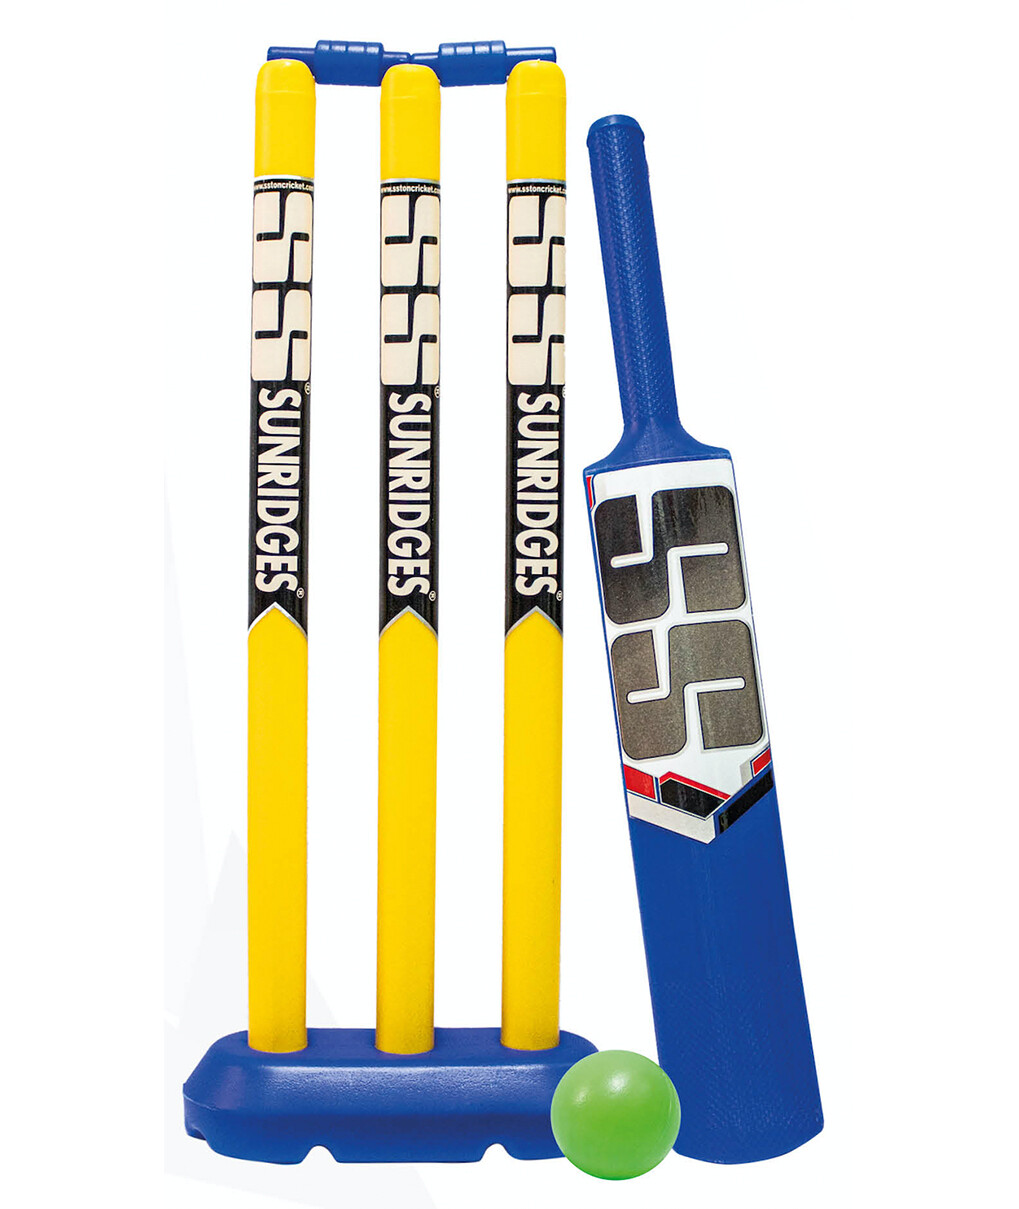 SS Jnr Mini - Plastic Cricket Set